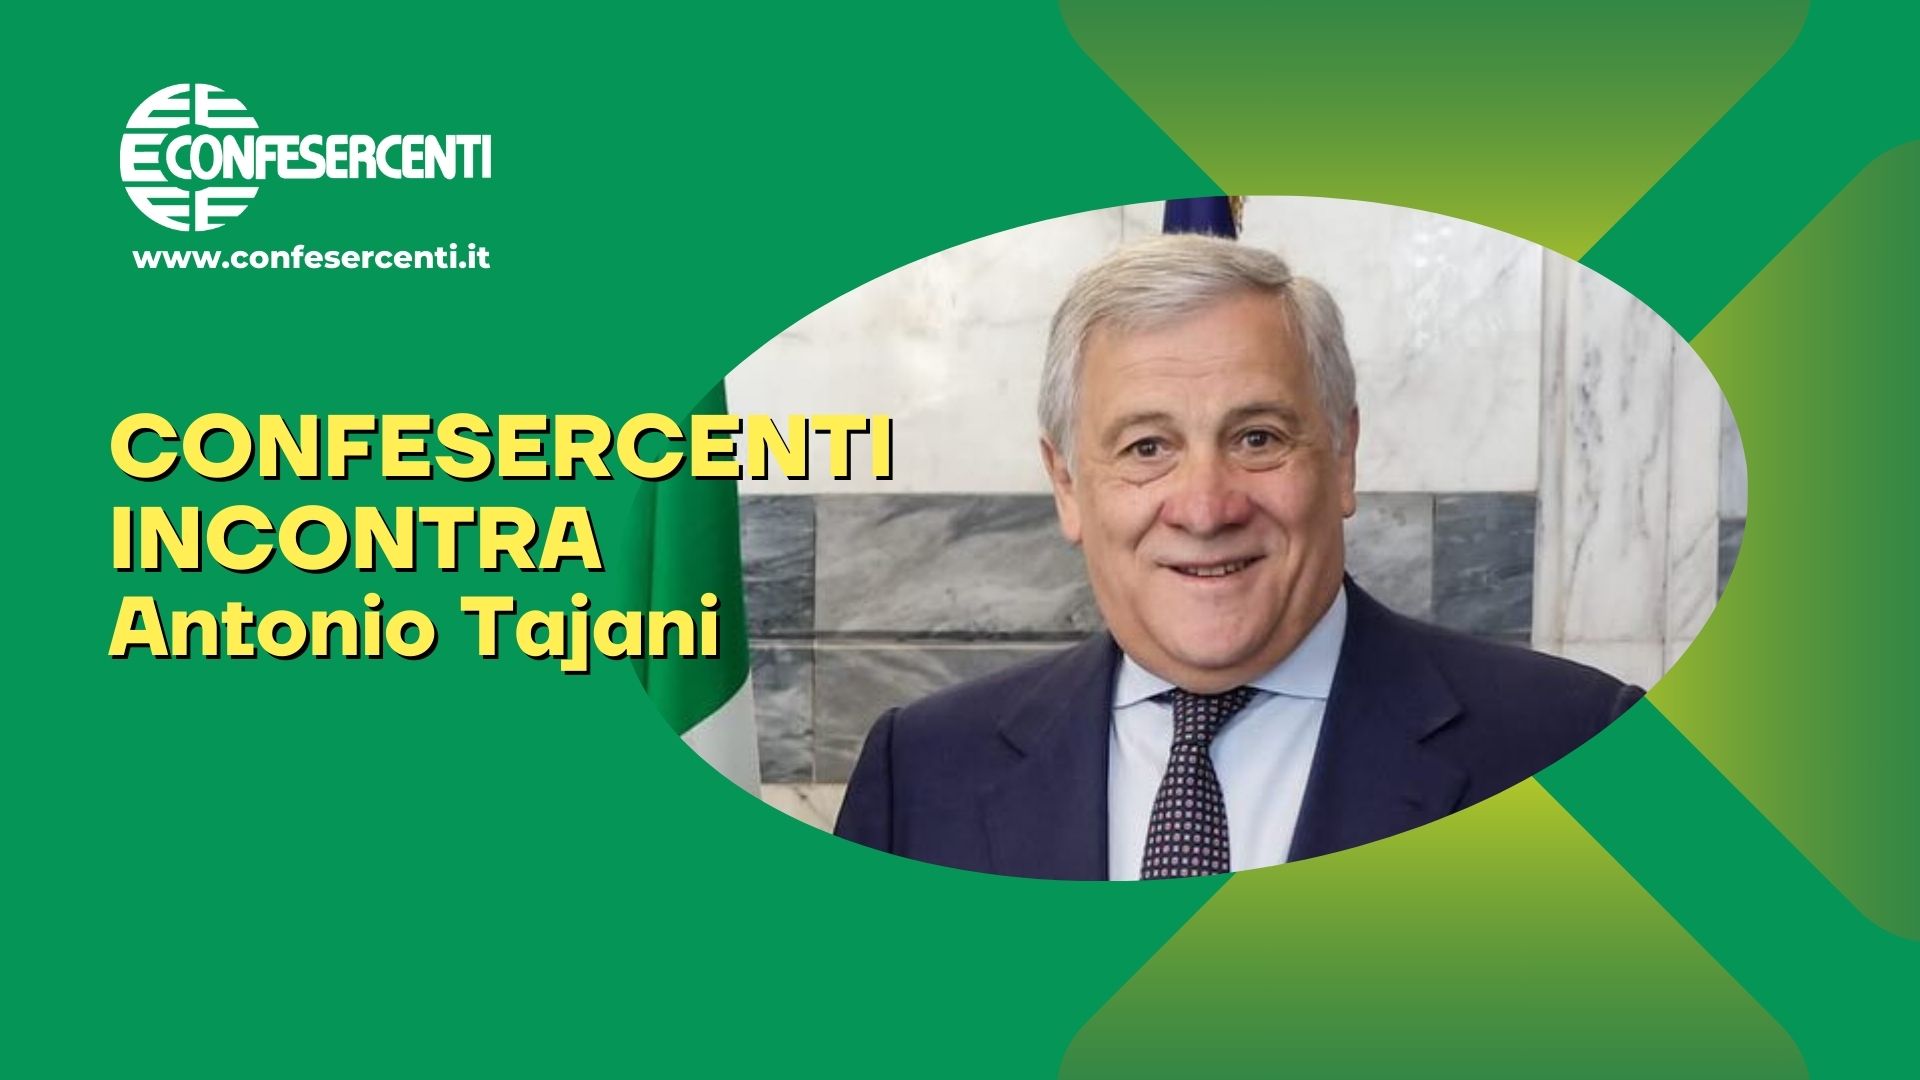 Europee: Confesercenti incontra Antonio Tajani, diretta streaming giovedì 6 giugno alle ore 10.15